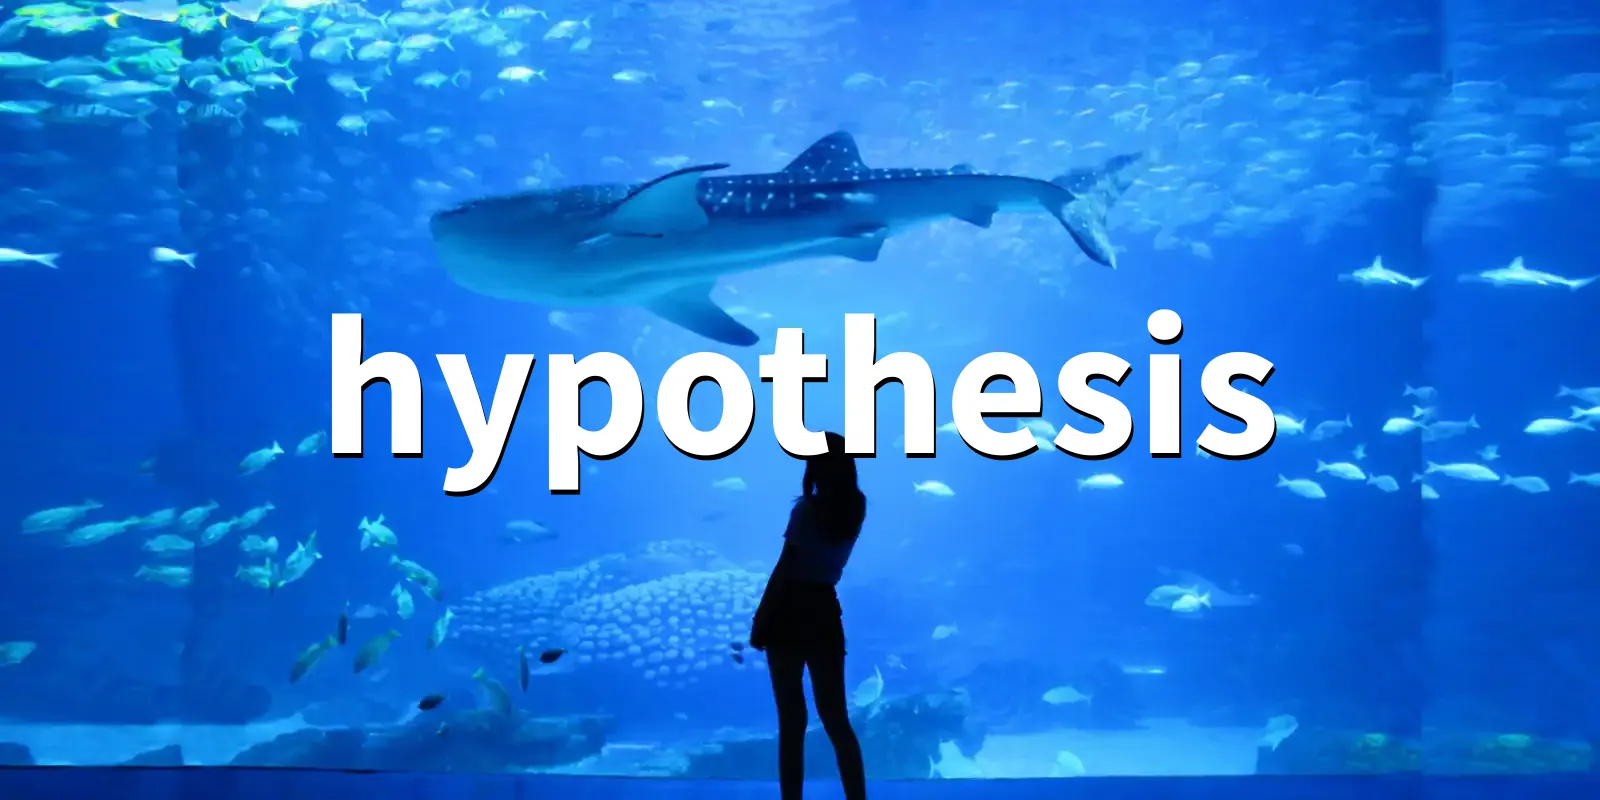 /pkg/h/hypothesis/hypothesis-banner.webp